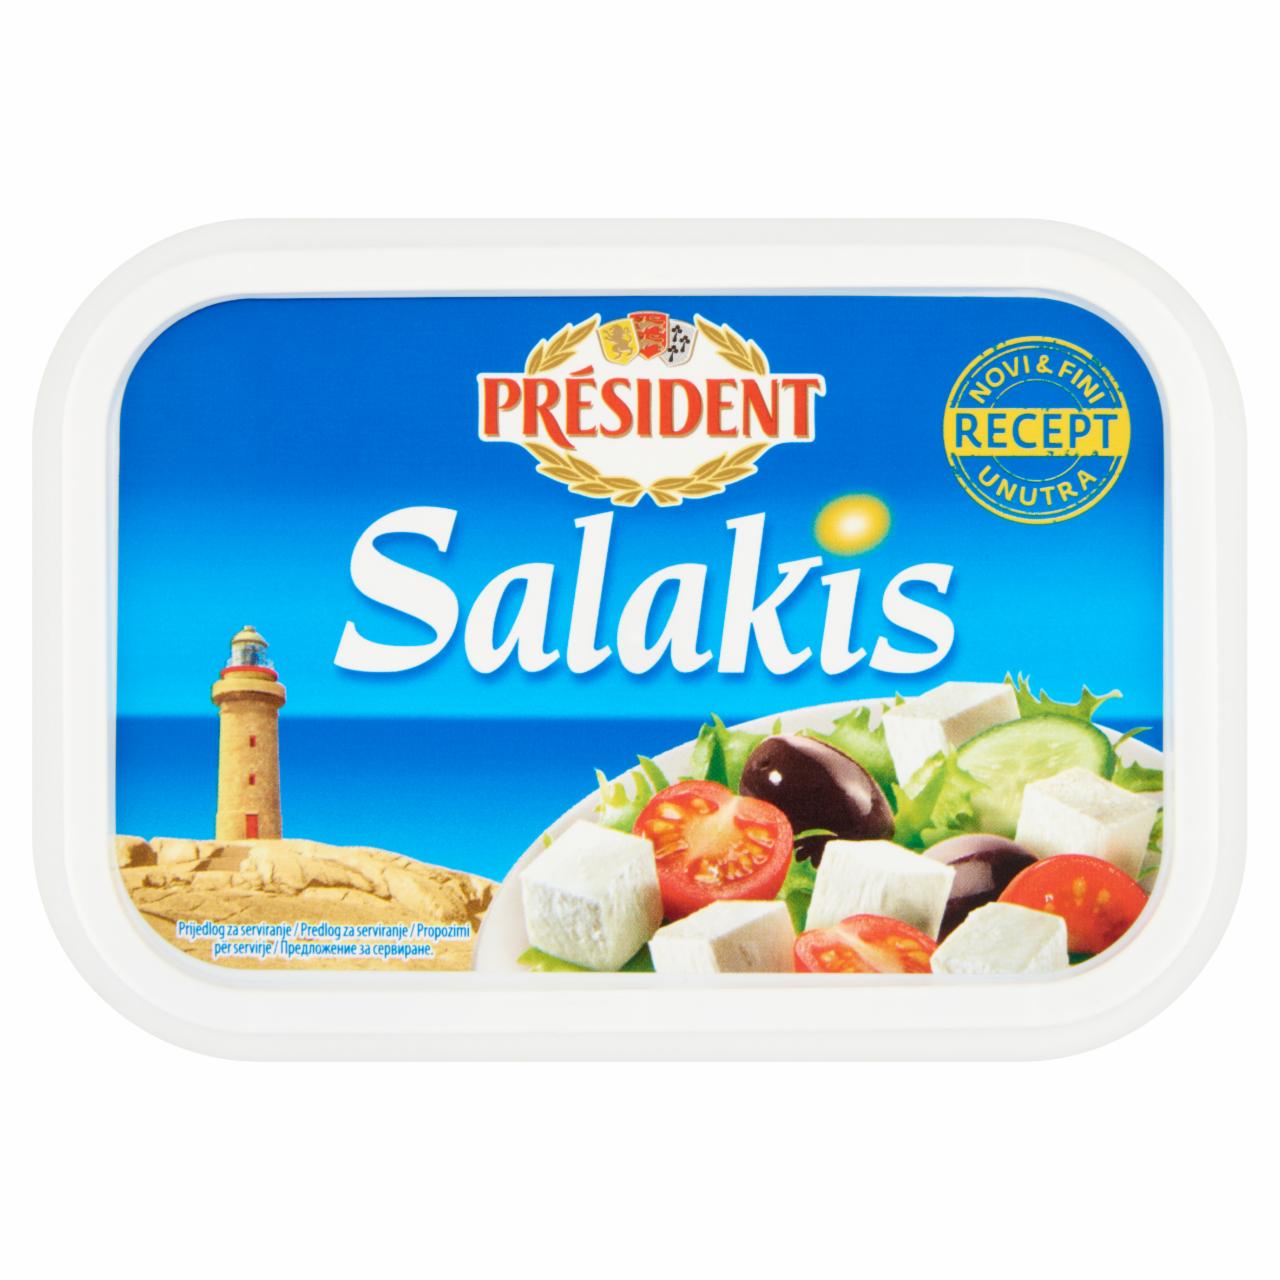 Képek - Président Salakis zsíros lágy sajt 150 g